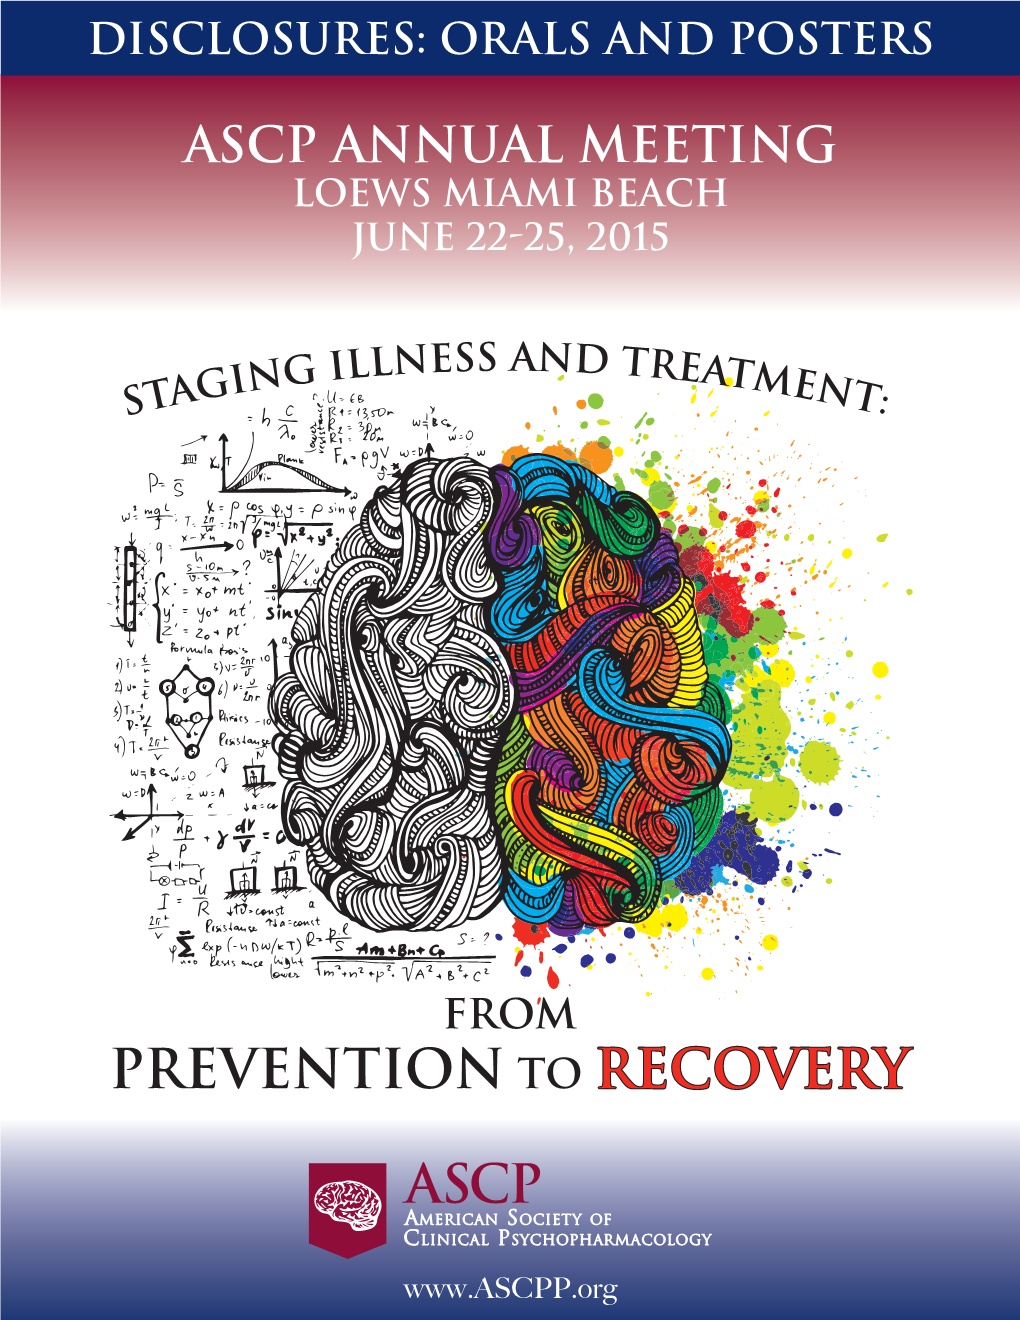 ASCP Annual Meeting Loews Miami Beach June 22-25, 2015